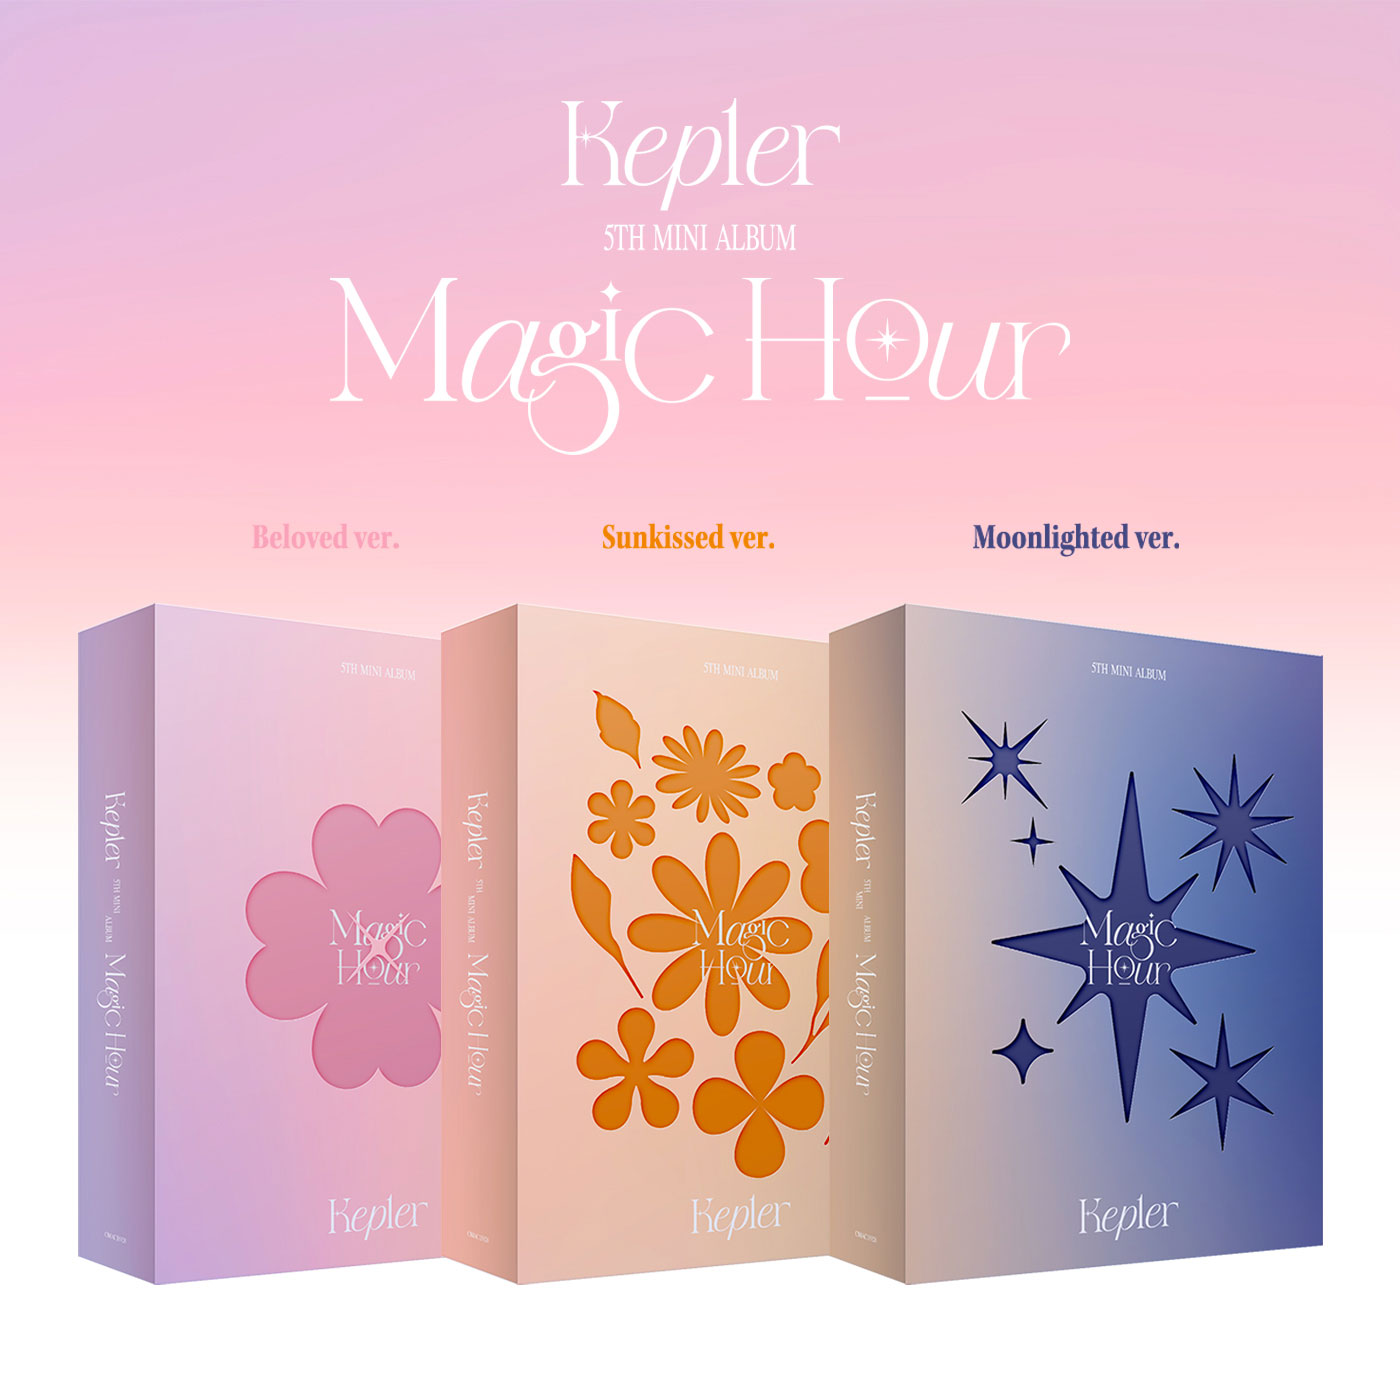 Kep1er 5thミニアルバム『Magic Hour』|K-POP・アジア